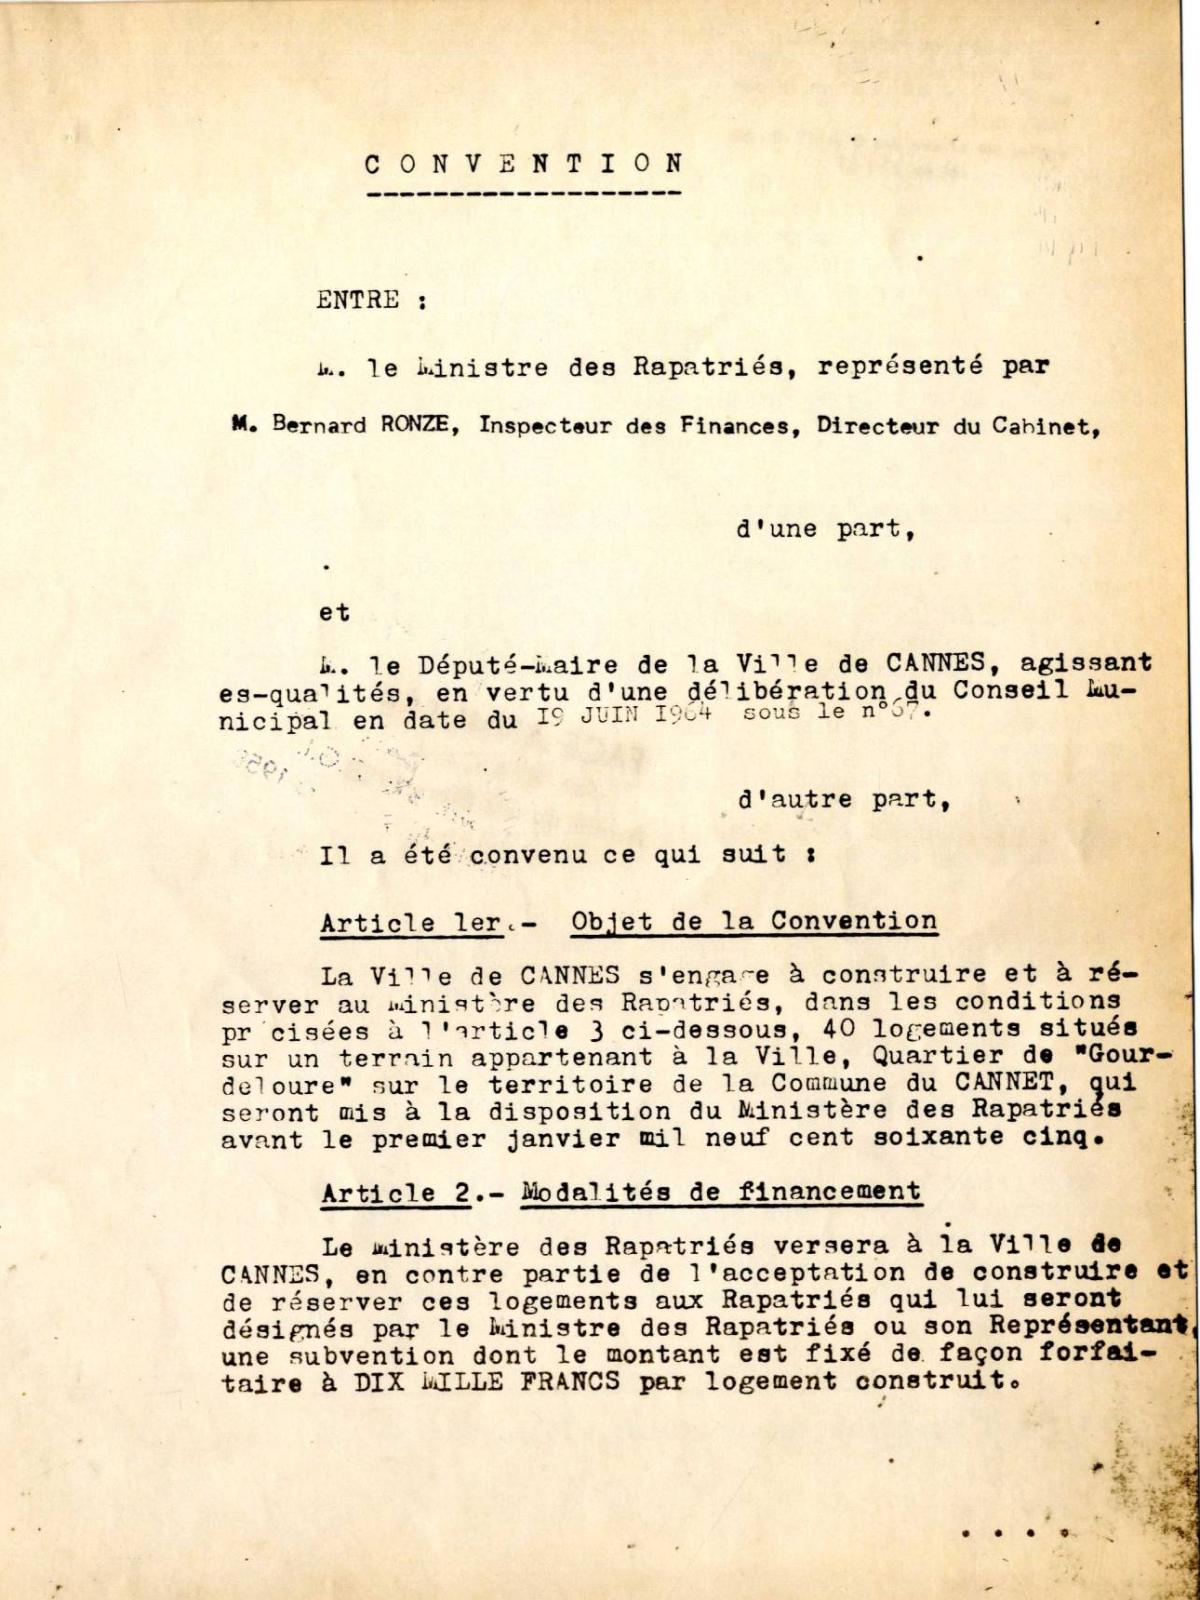 Illustration 4 : cité des Mimosas à Cannes, convention signée entre le ministère des Rapatriés et le député-maire de Cannes, 25 mai 1964 (Archives de Cannes, 235W1)